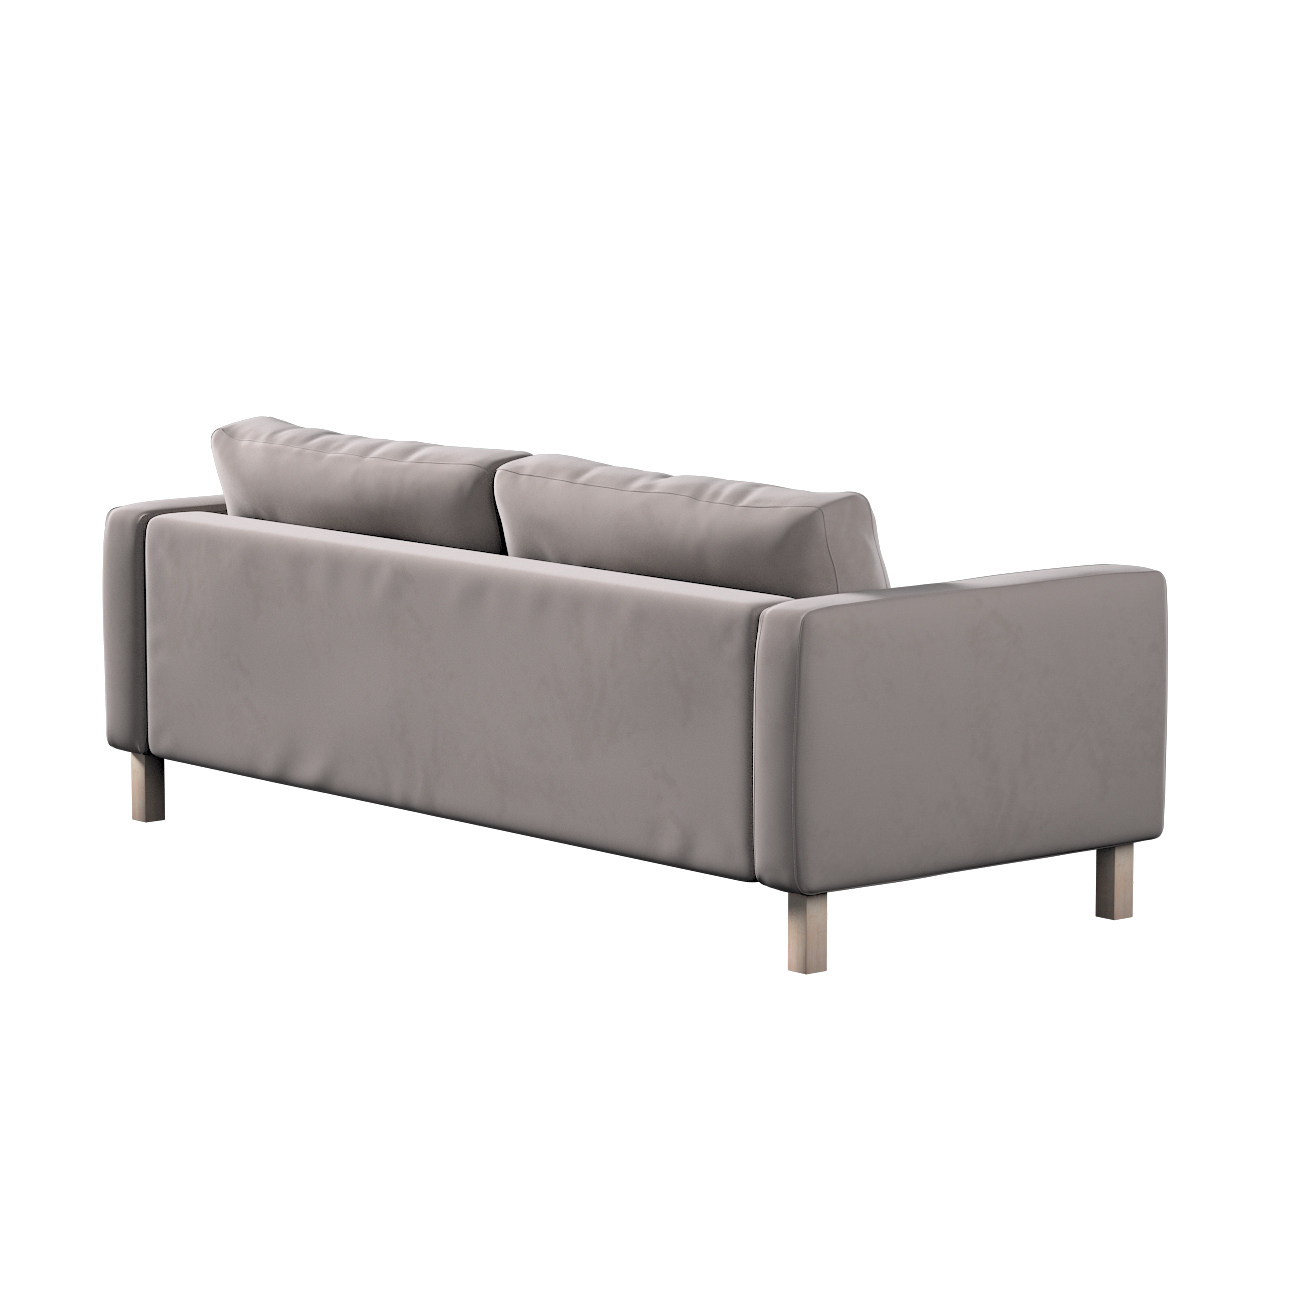 Bezug für Karlstad 3-Sitzer Sofa nicht ausklappbar, kurz, mocca, Bezug für günstig online kaufen